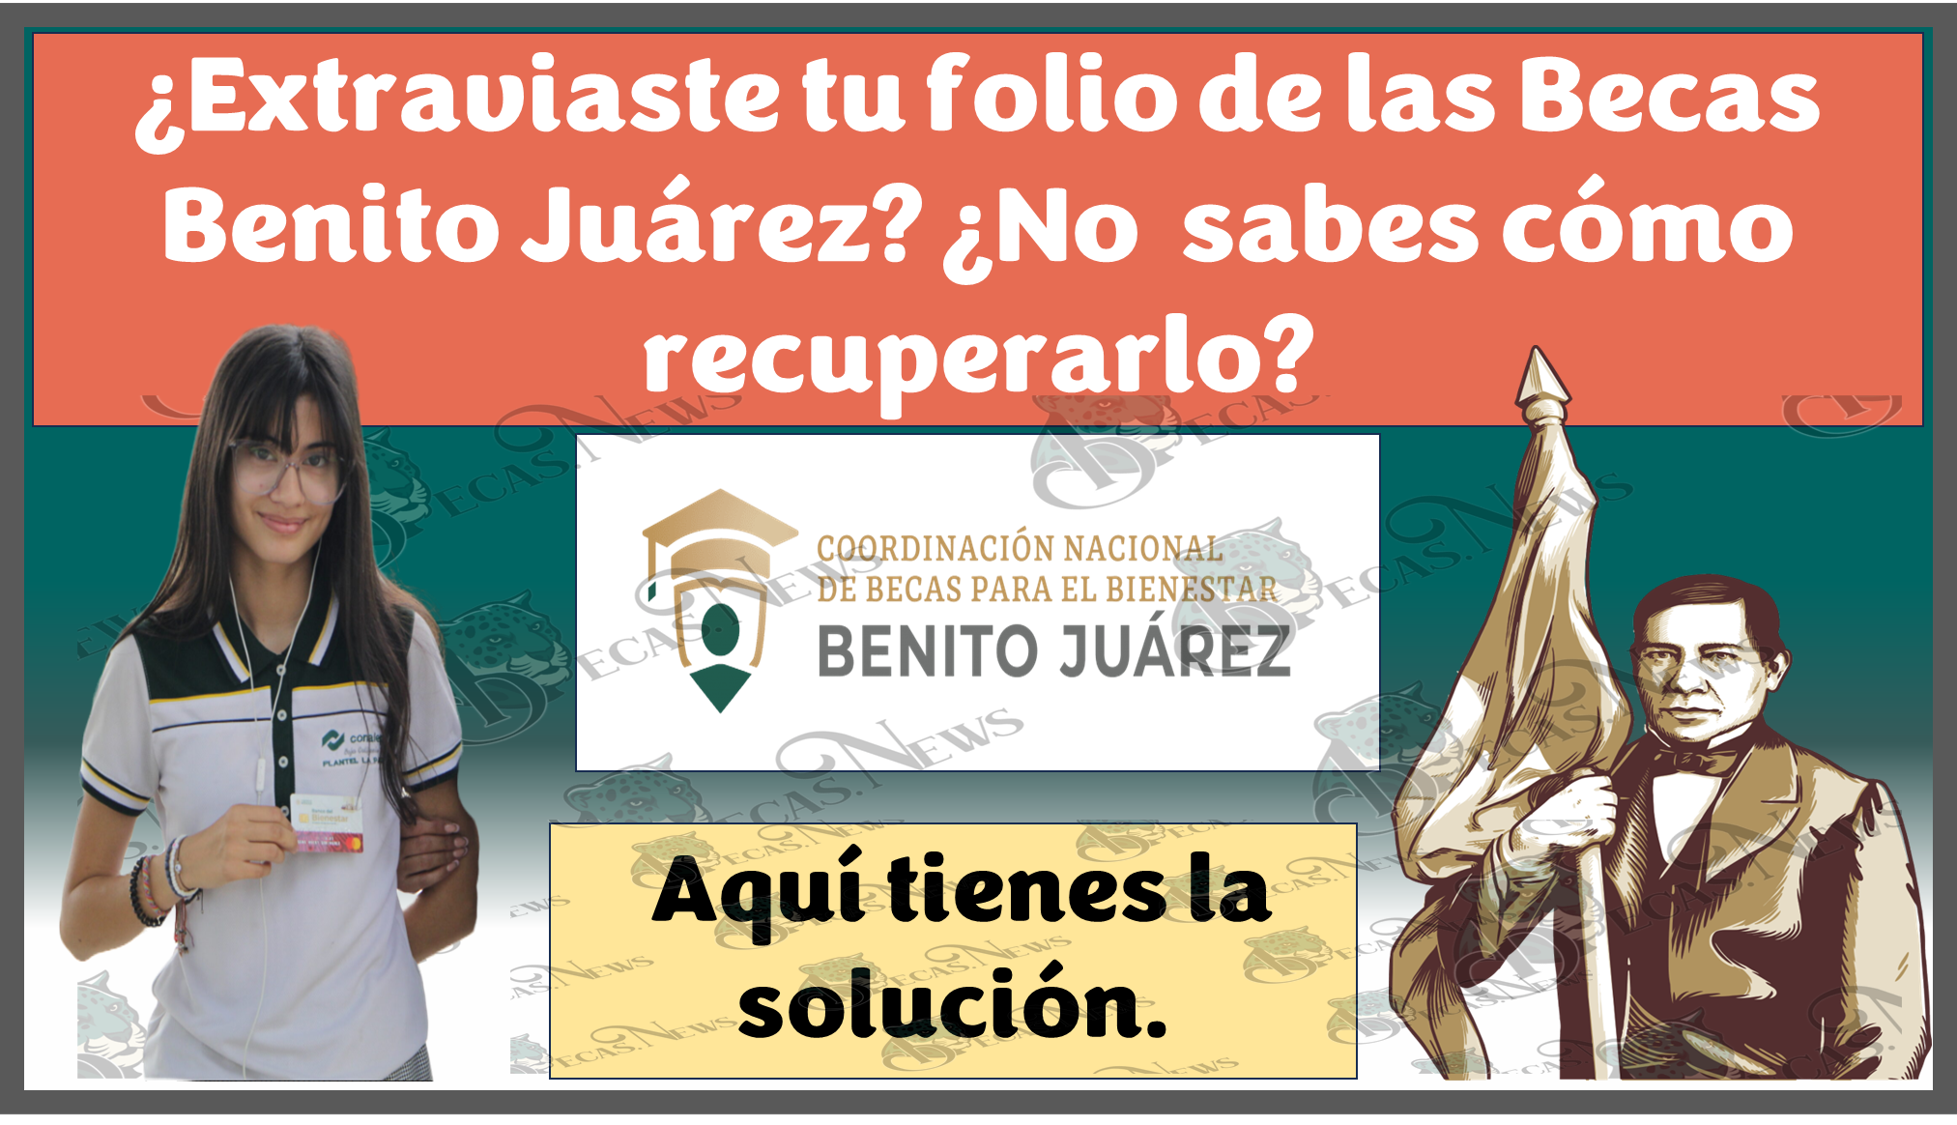 ¿Extraviaste tu folio de las Becas Benito Juárez? ¿No sabes como recuperarlo?, Aquí tienes la solución.